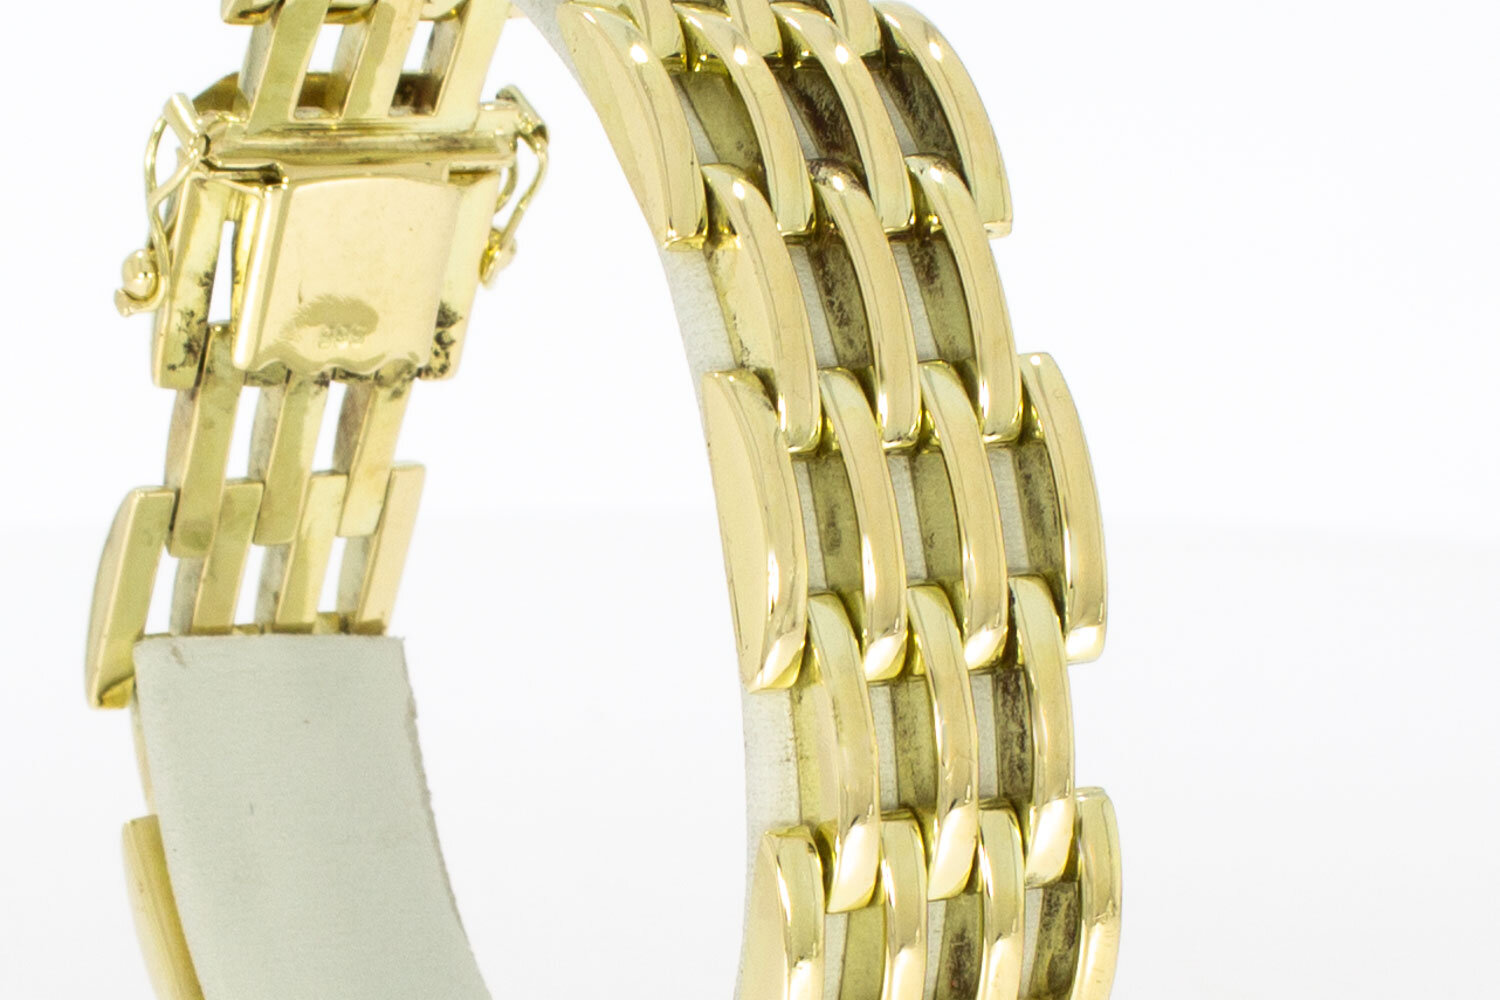 Goldbarren Armband 14 Karat - 19,8 cm